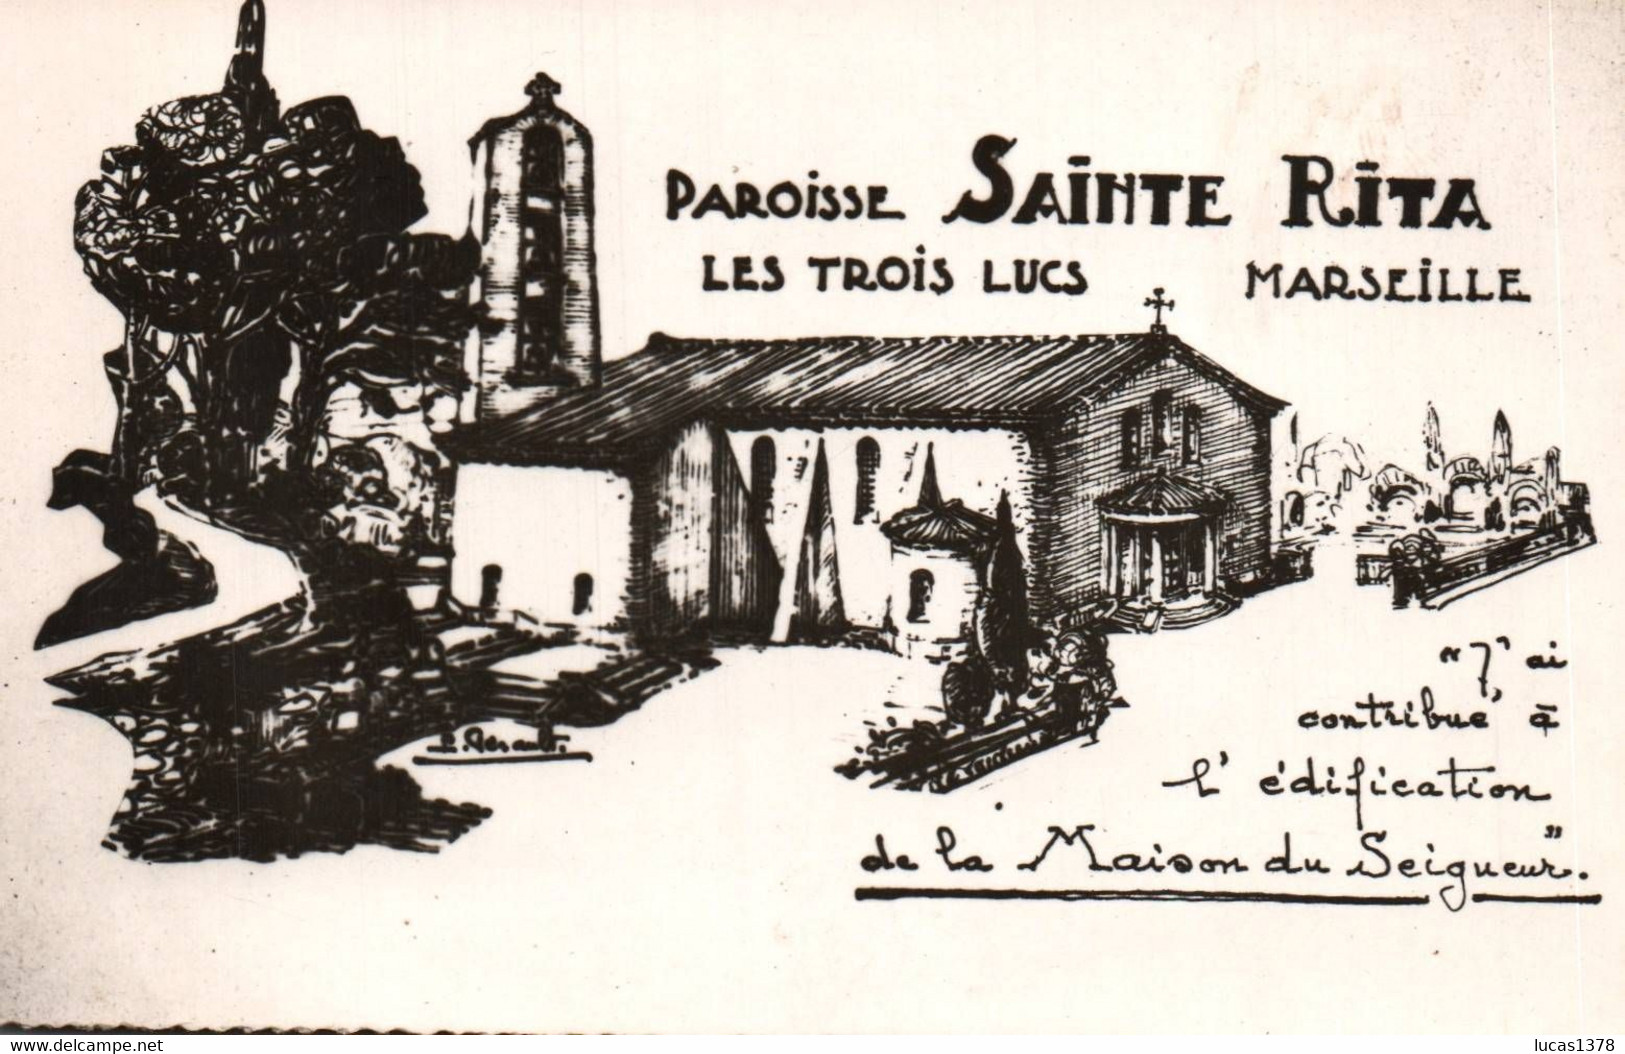 13 / MARSEILLE / LES TROIS LUCS / PAROISSE SAINTE RITA - Saint Barnabé, Saint Julien, Montolivet